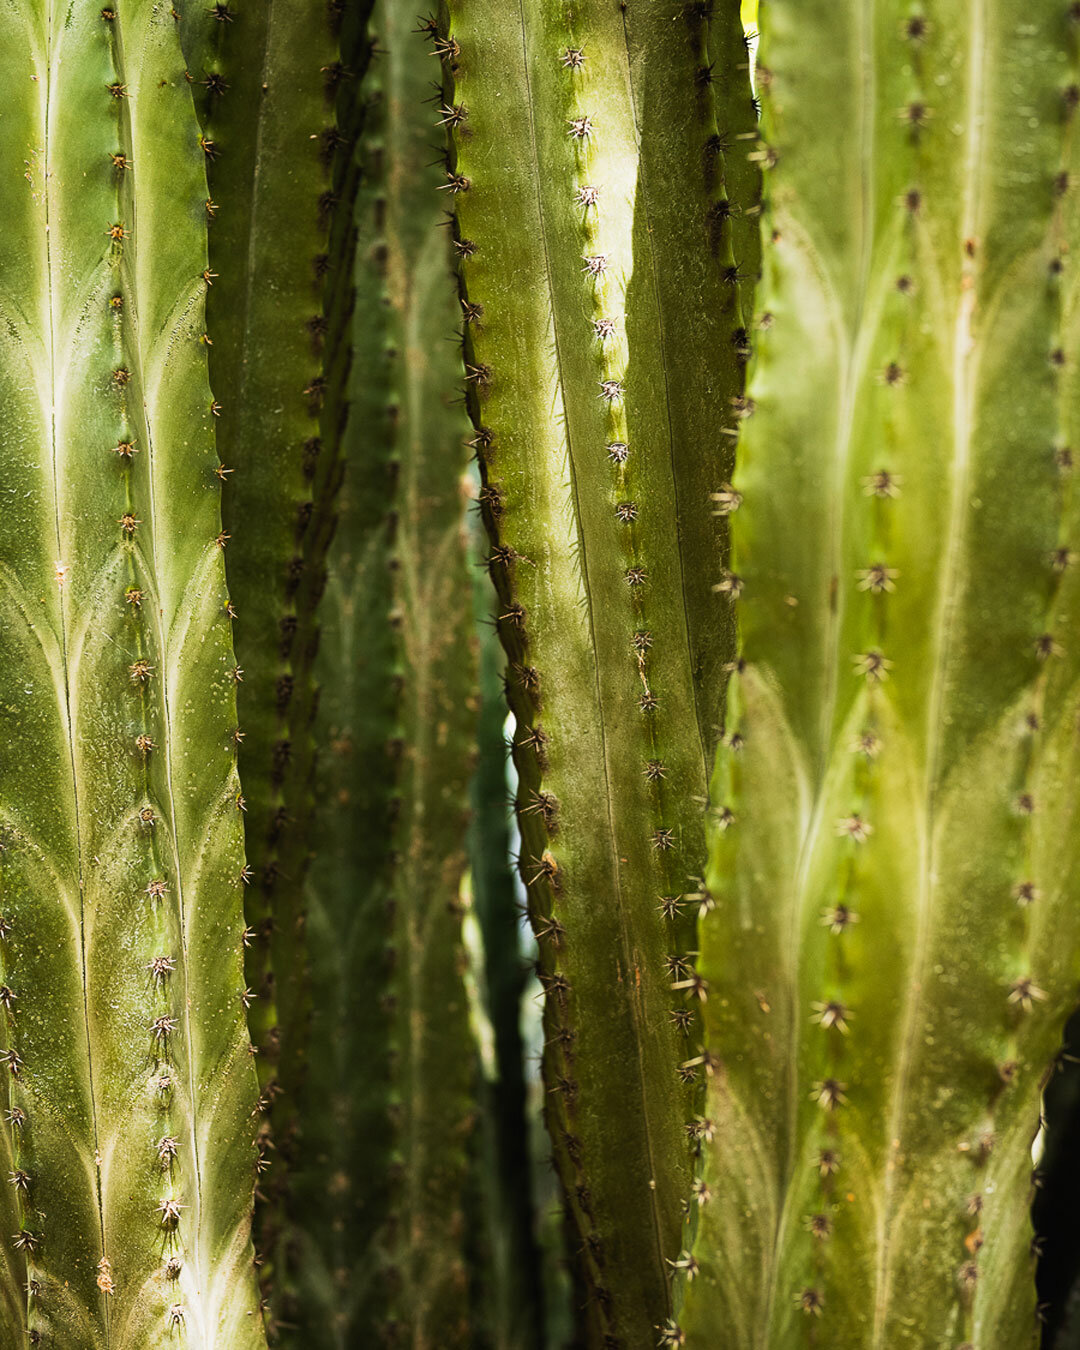 Explora la maravillosa simetr&iacute;a y resistencia de los cactus en este impresionante retrato. Cada hoja es como una columna arquitect&oacute;nica de la naturaleza. 🌵💚 Para descubrir m&aacute;s sobre esta y otras historias visuales, visita nuest